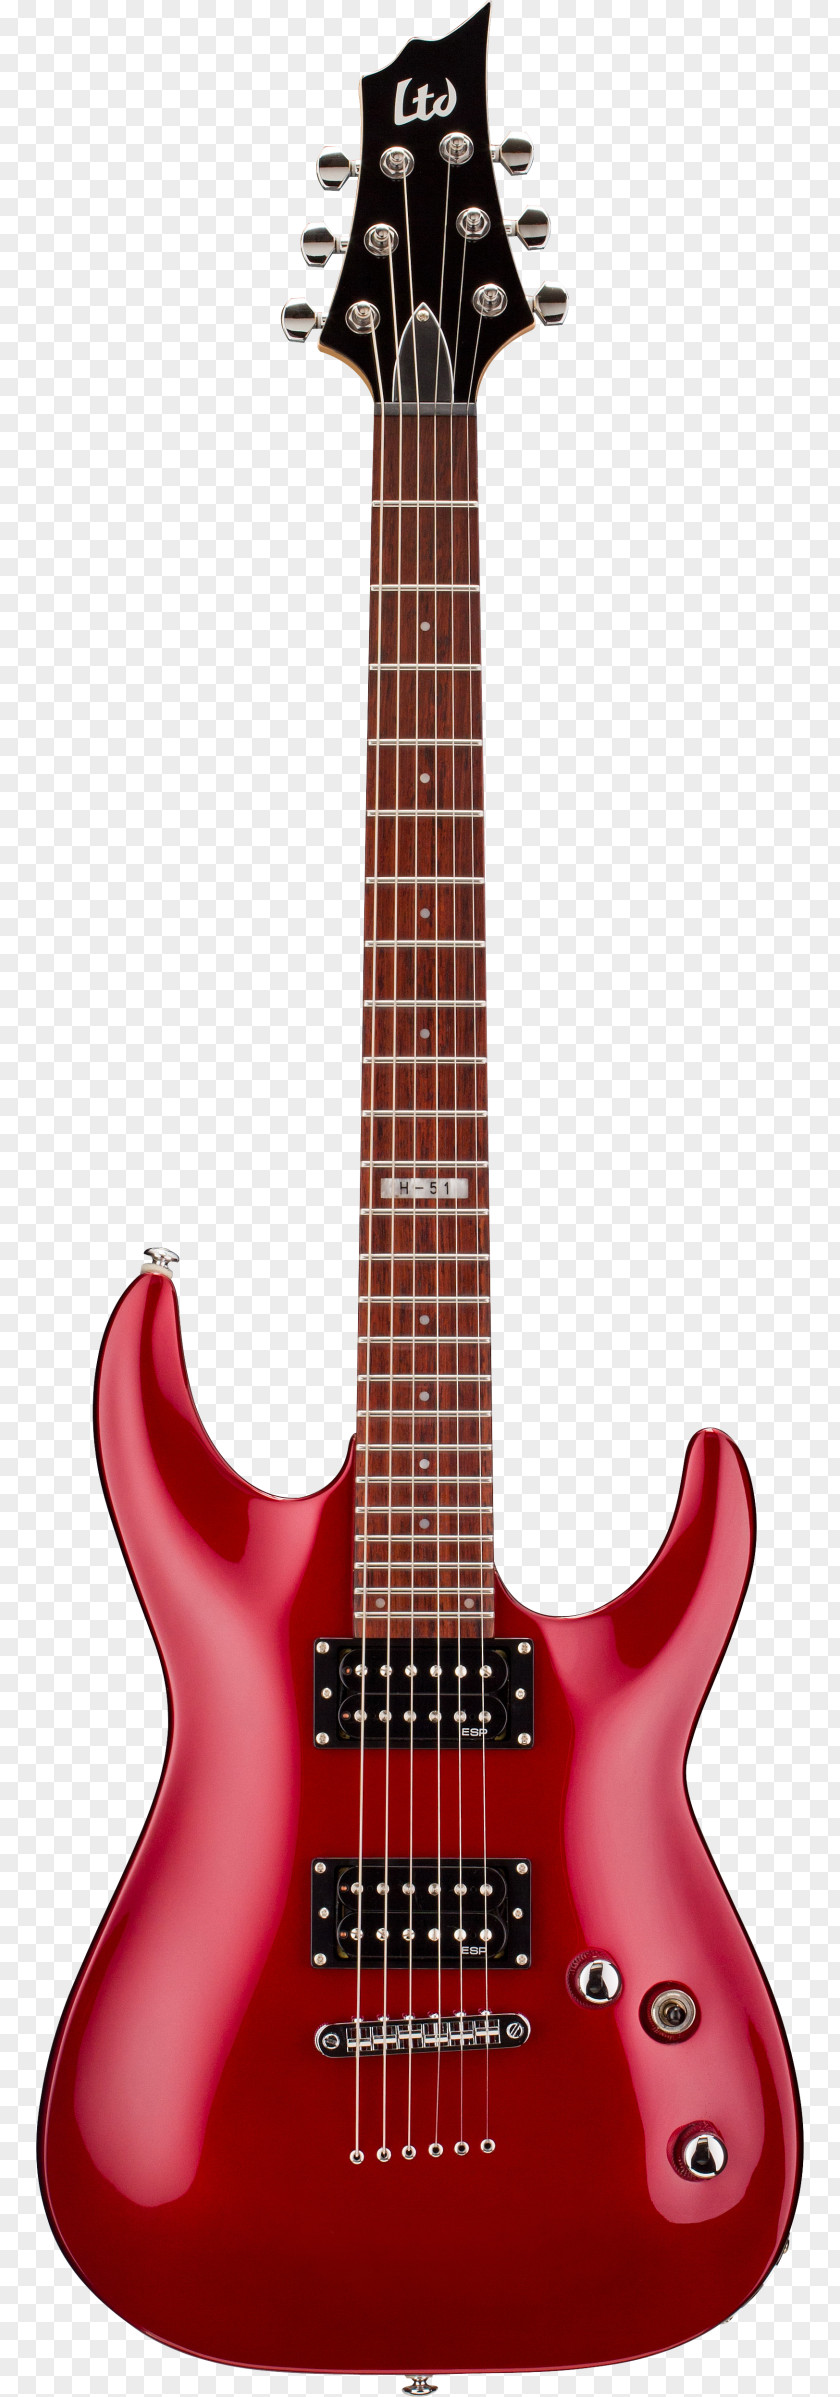 Guitar ESP LTD EC-1000 Guitars Electric Bolt-on Neck PNG